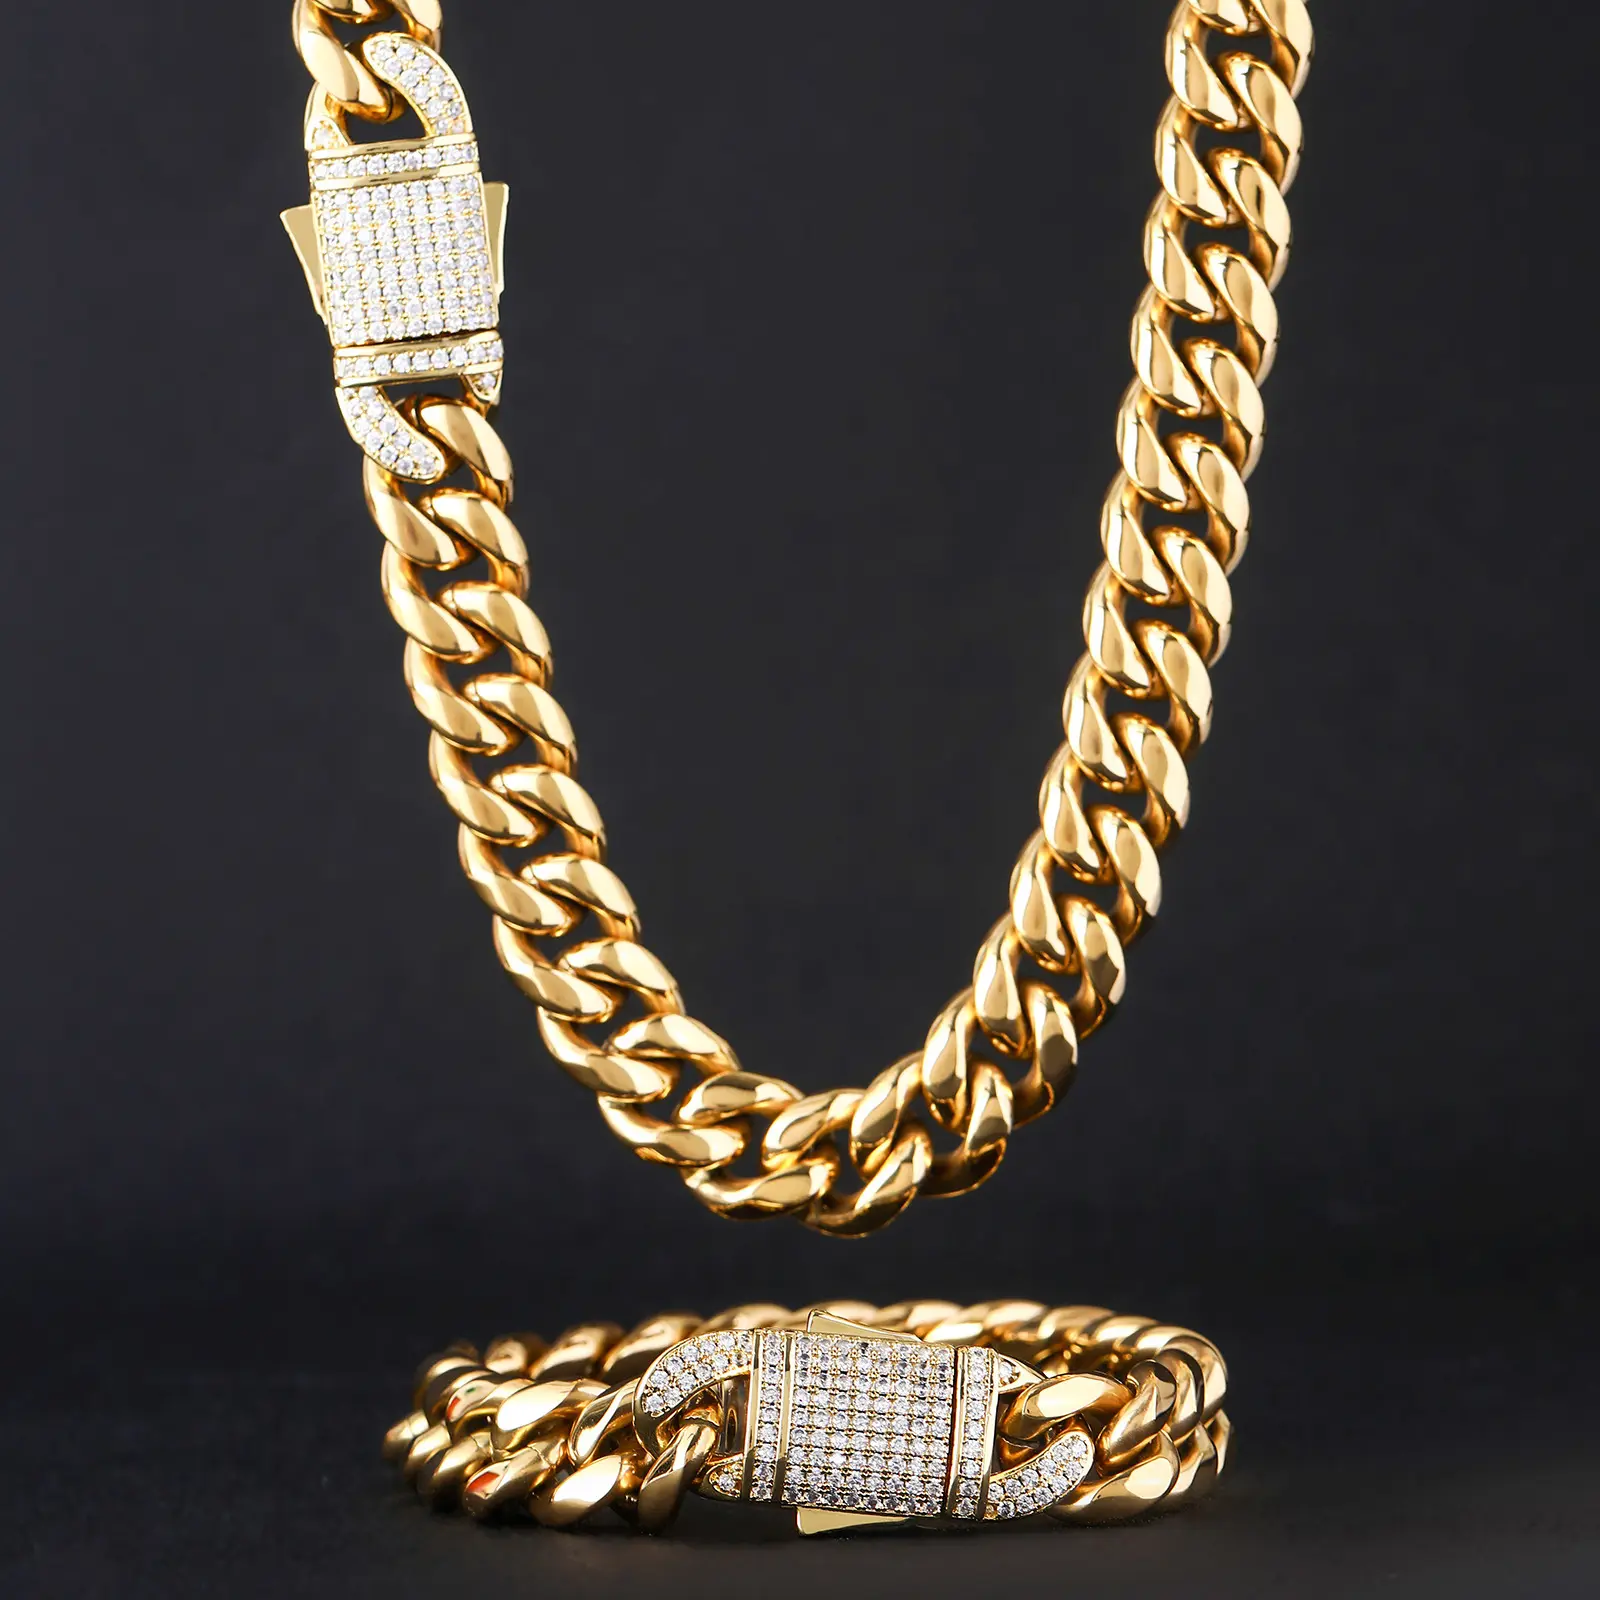 Hip Hop 6-18mm breite Edelstahl kubanische Kette Goldkette Herren 14 Karat 18 Karat Gold kubanische Kette Halskette